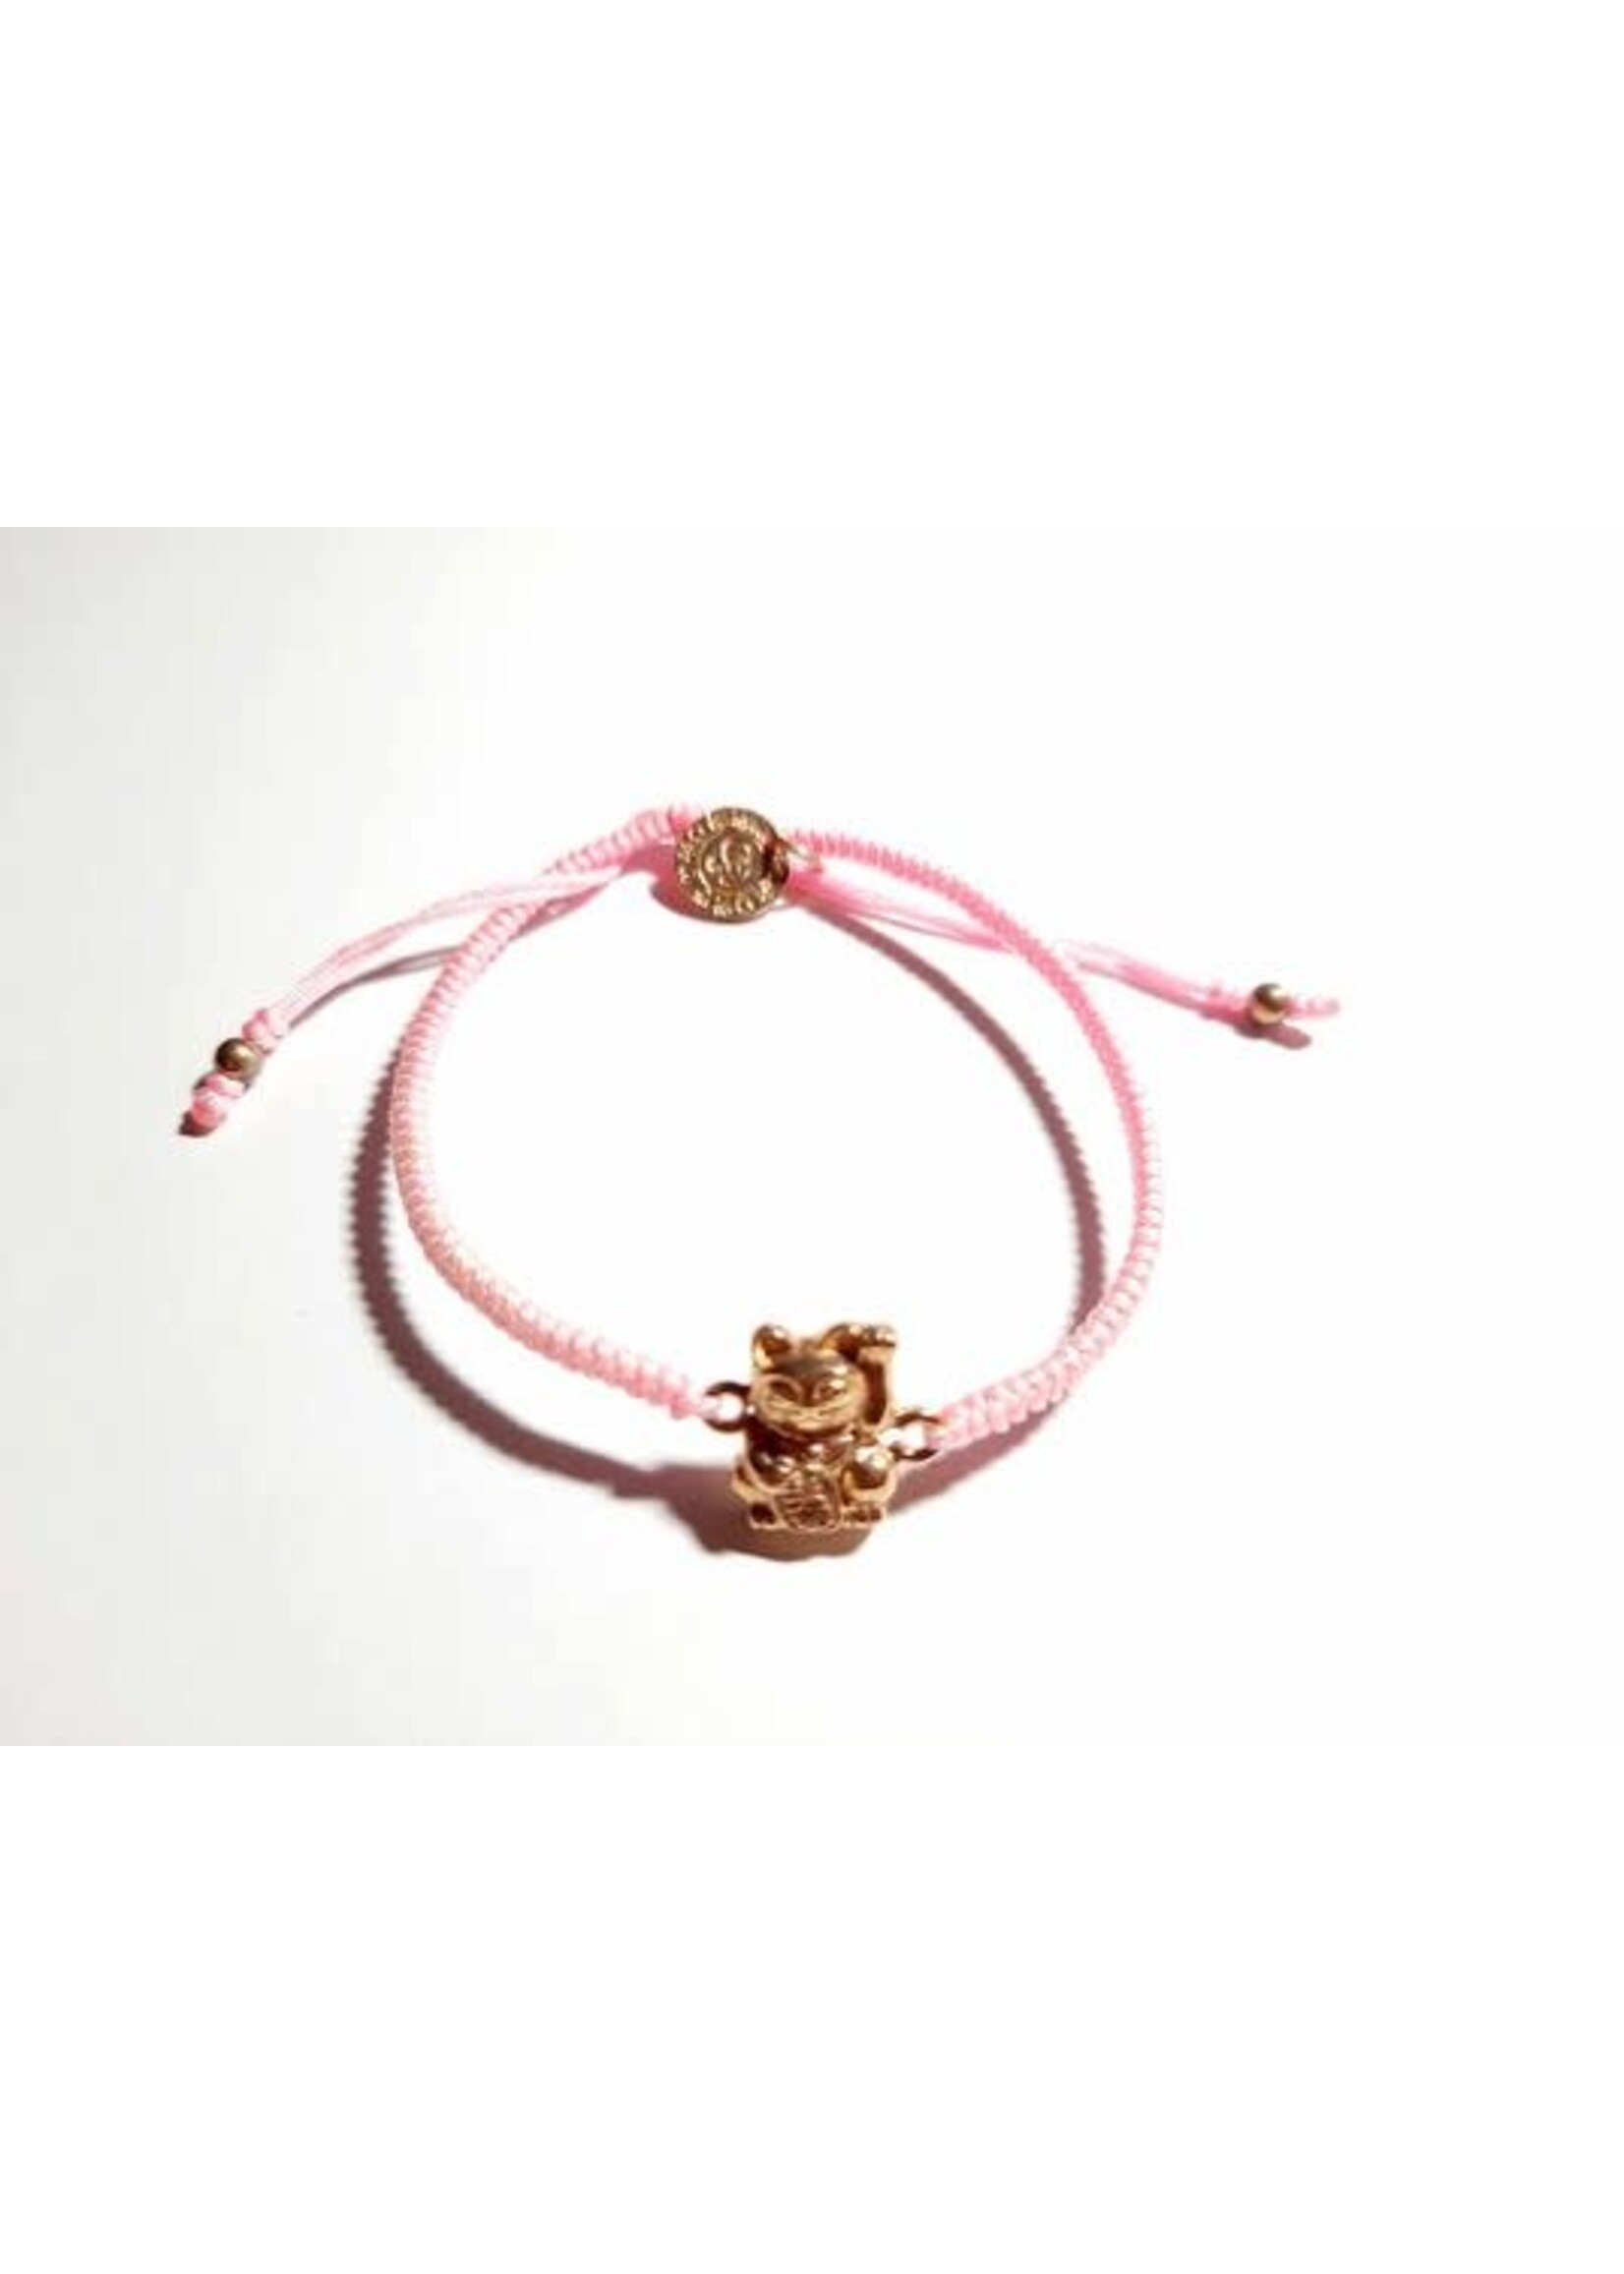 Barong Barong Barong Barong armband met schuifknoop, lucky cat en koord roze